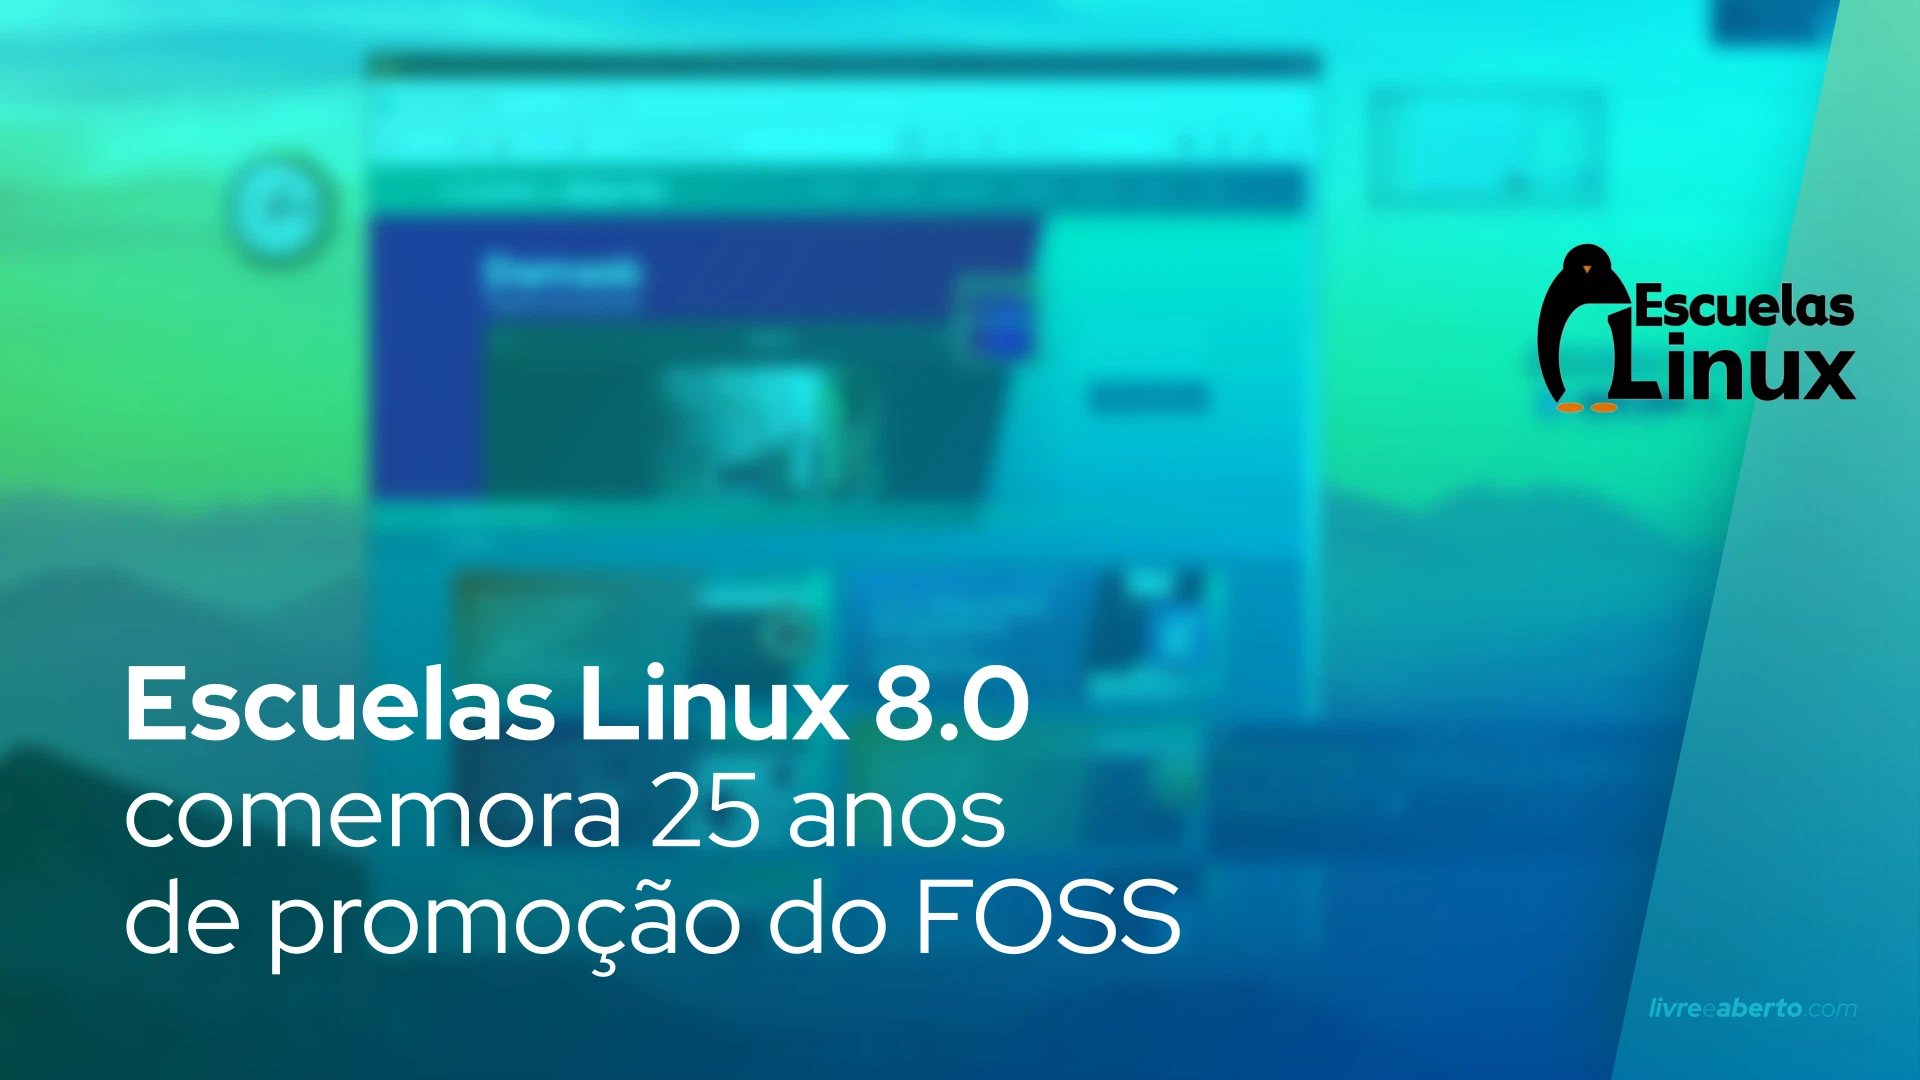 Escuelas Linux 8.0 comemora 25 anos de promoção do FOSS